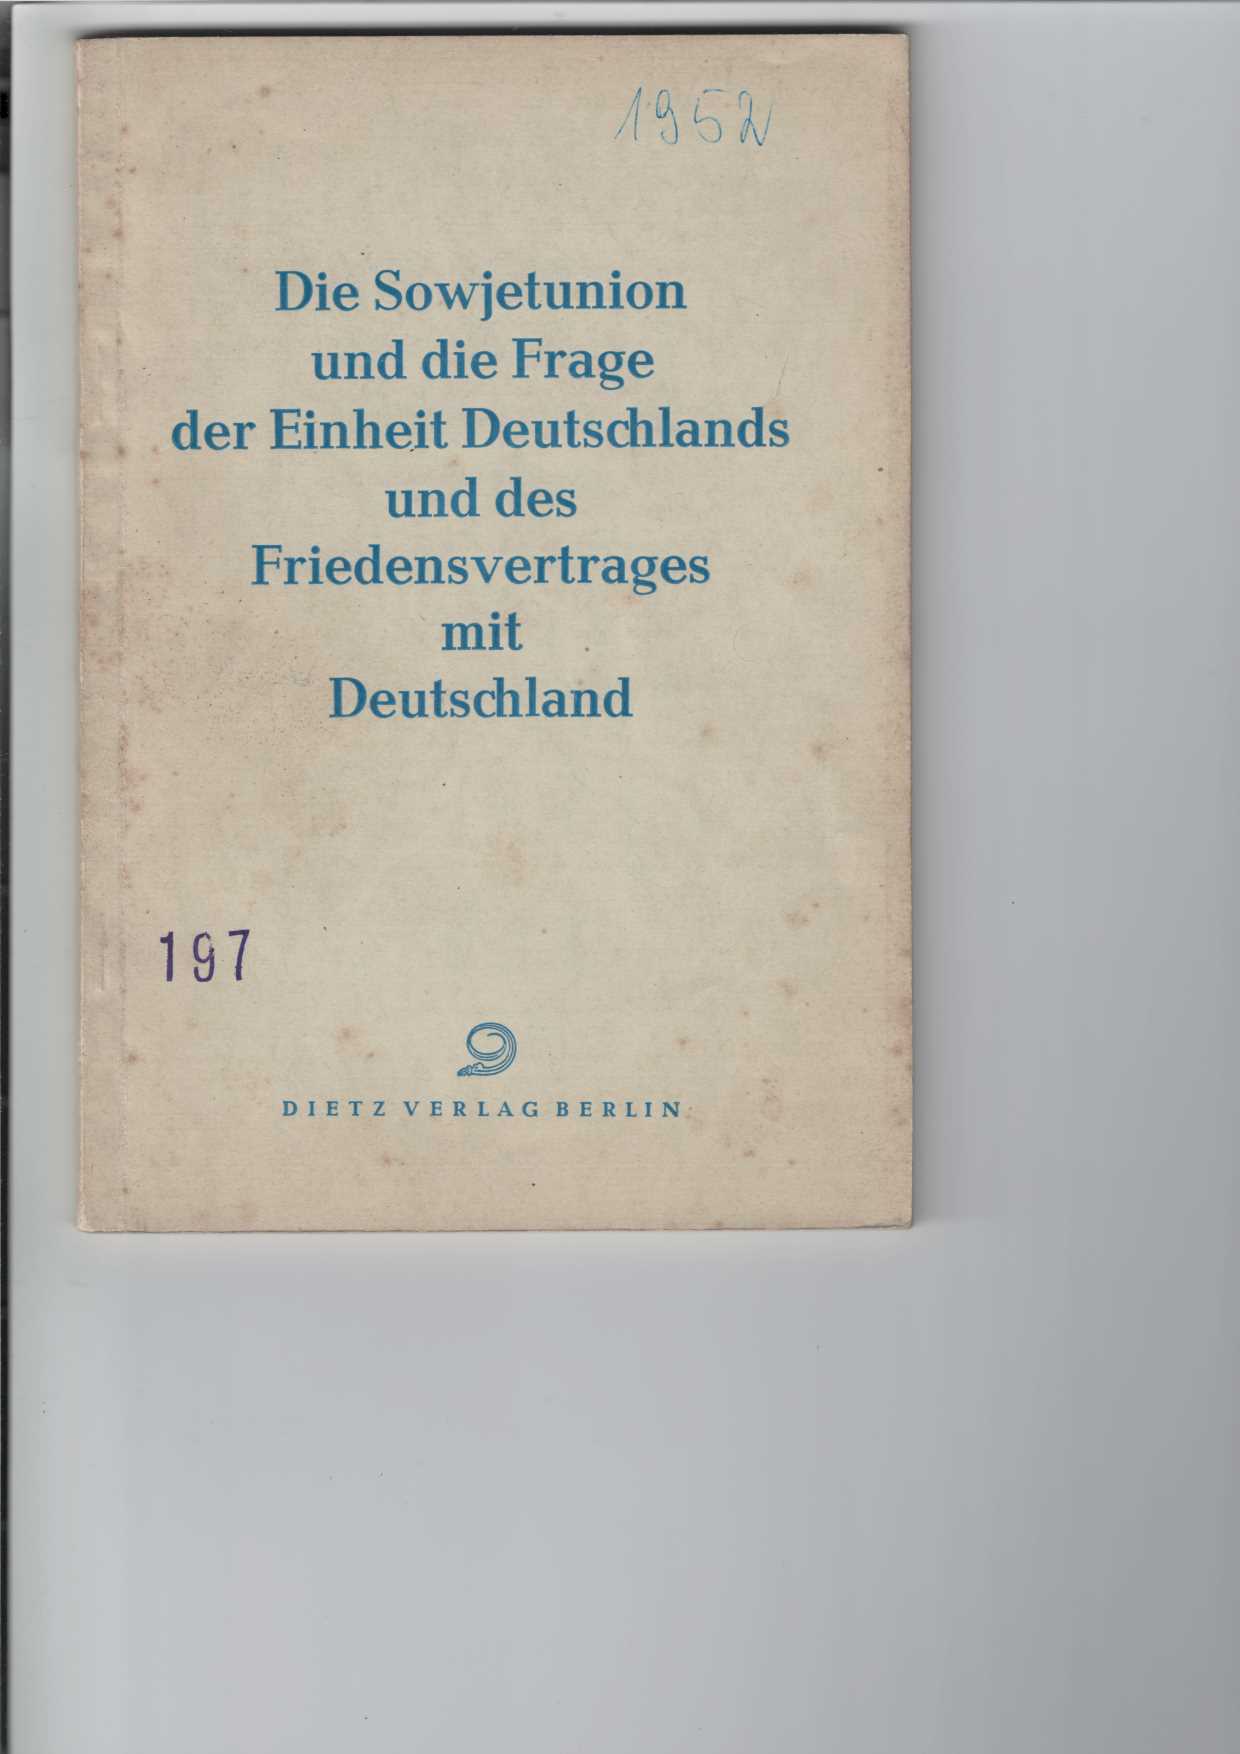   Die Sowjetunion und die Frage der Einheit Deutschlands und des Friedensvertrages mit Deutschland. 